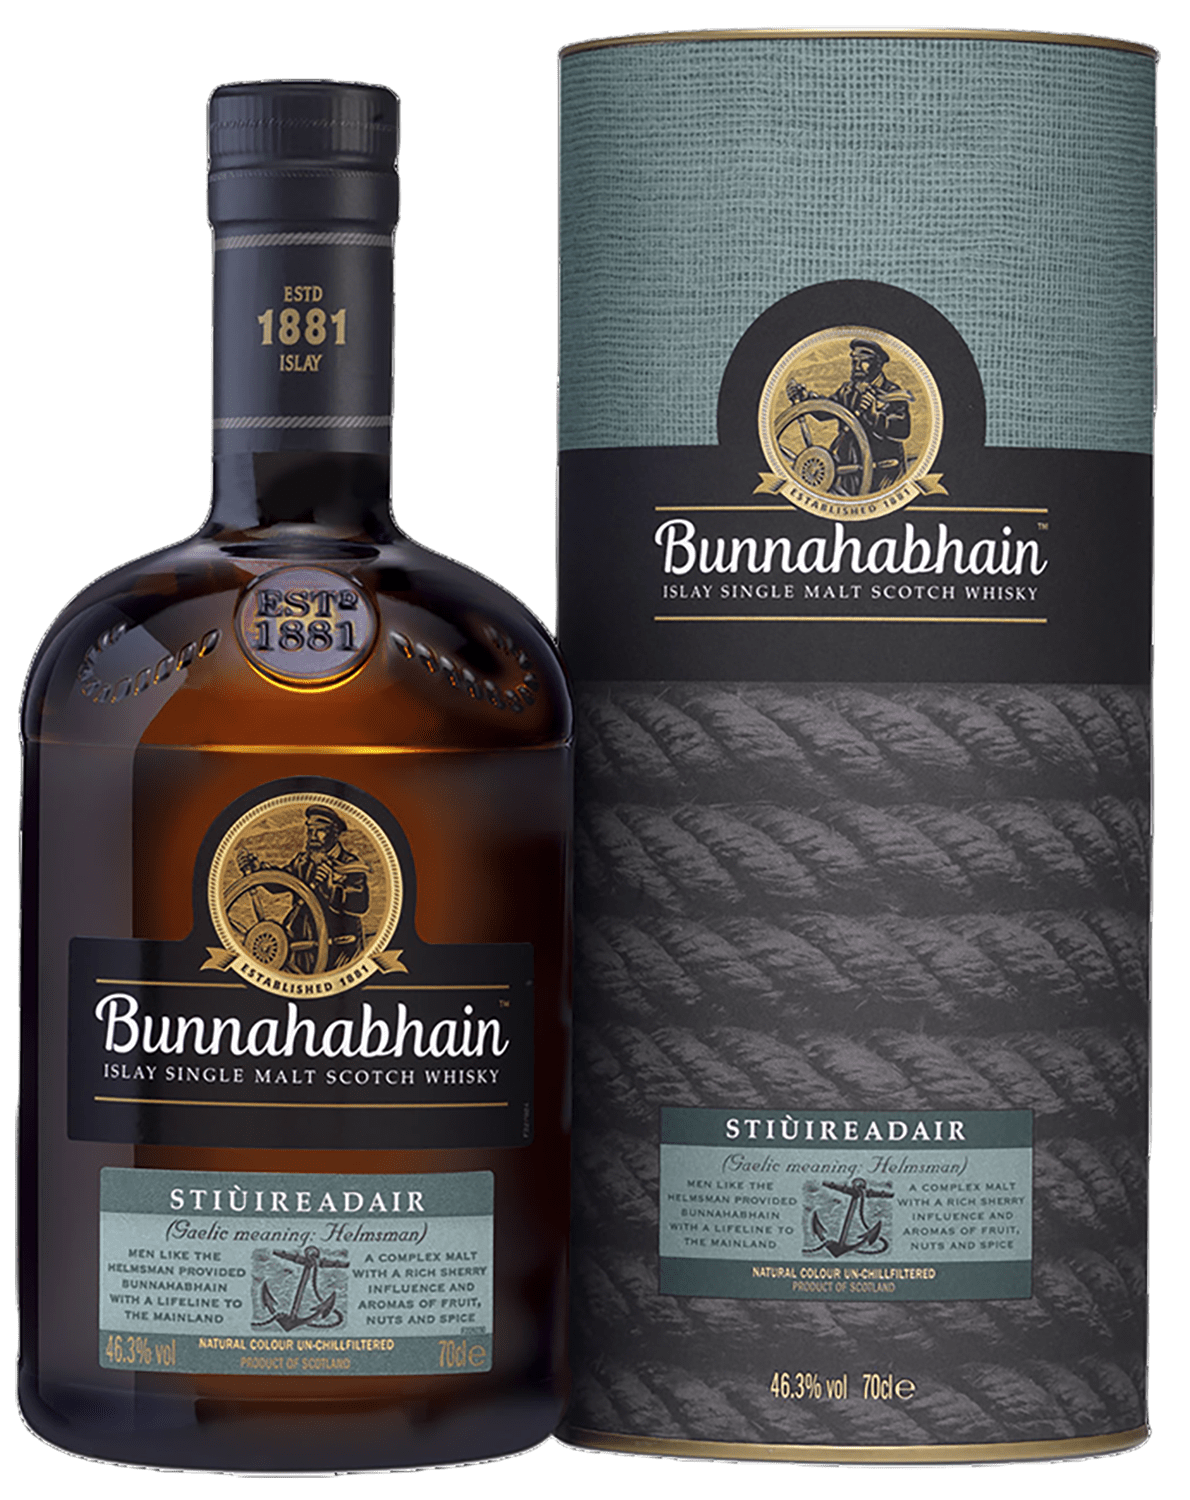 Bunnahabhain Stiuireadair Islay Single Malt Scotch Whisky (gift box) bunnahabhain islay single malt scotch whisky 12 y o gift box